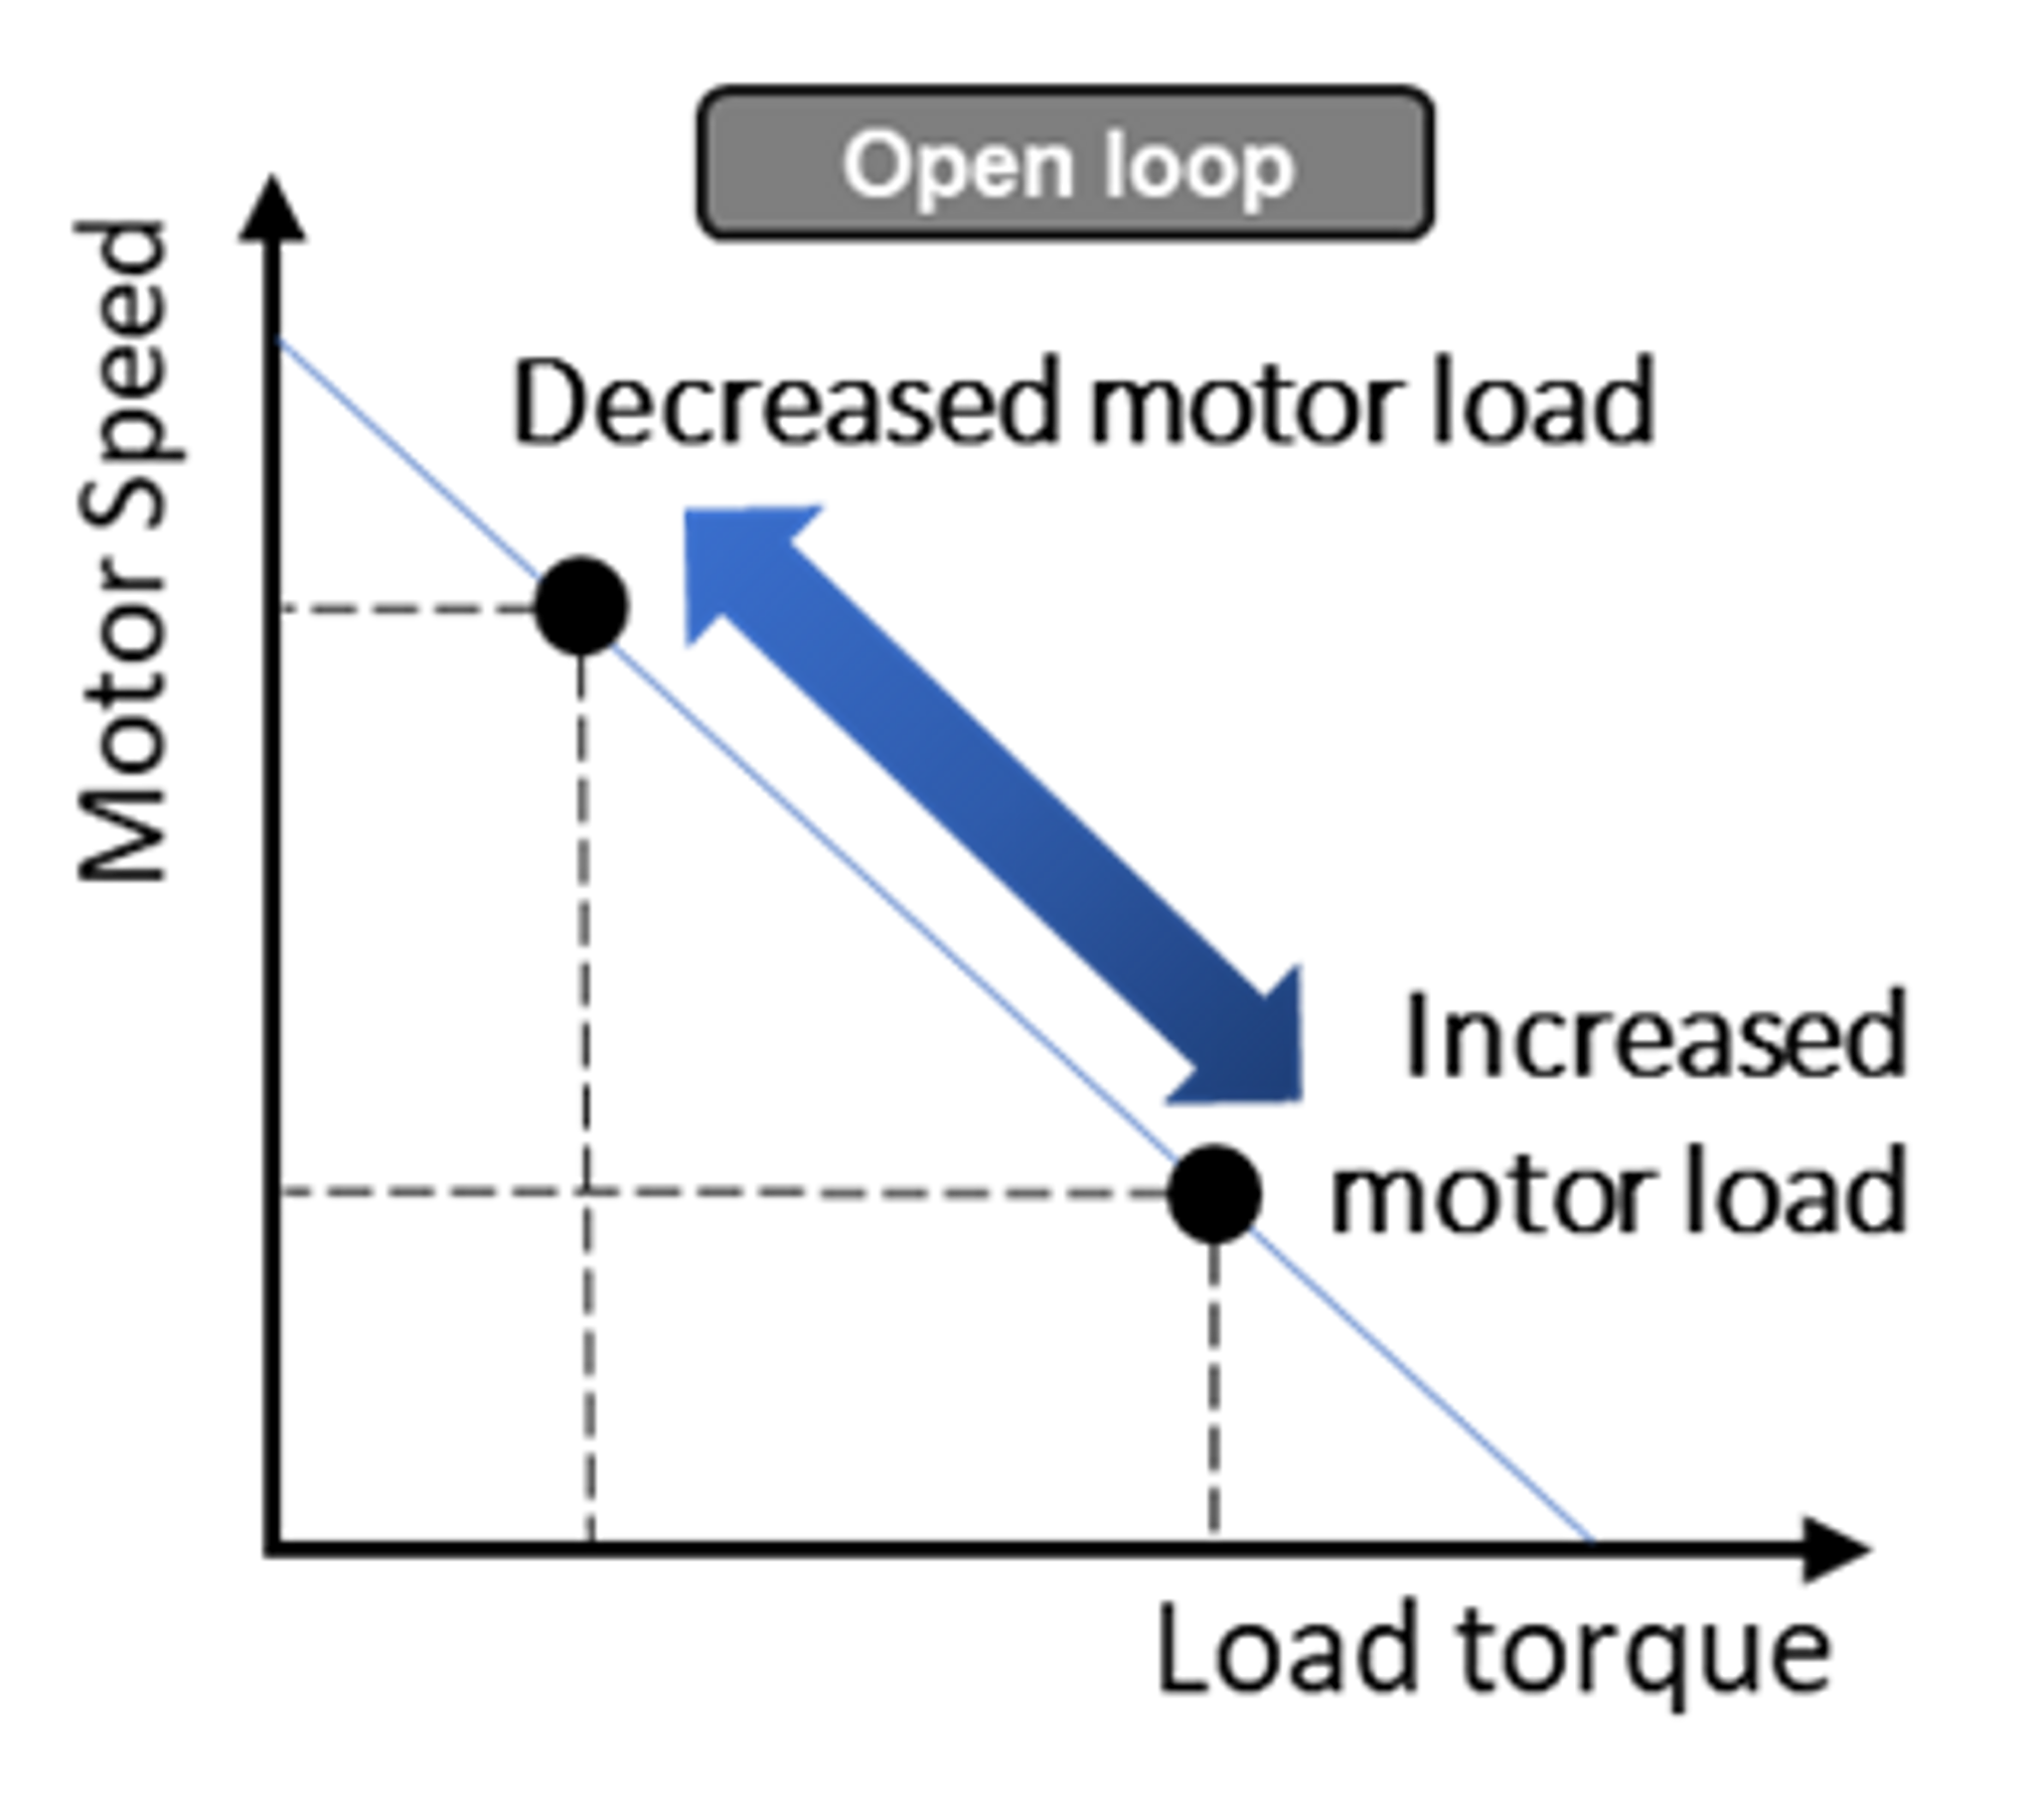 DC Motor Voltage Control in Open Loop